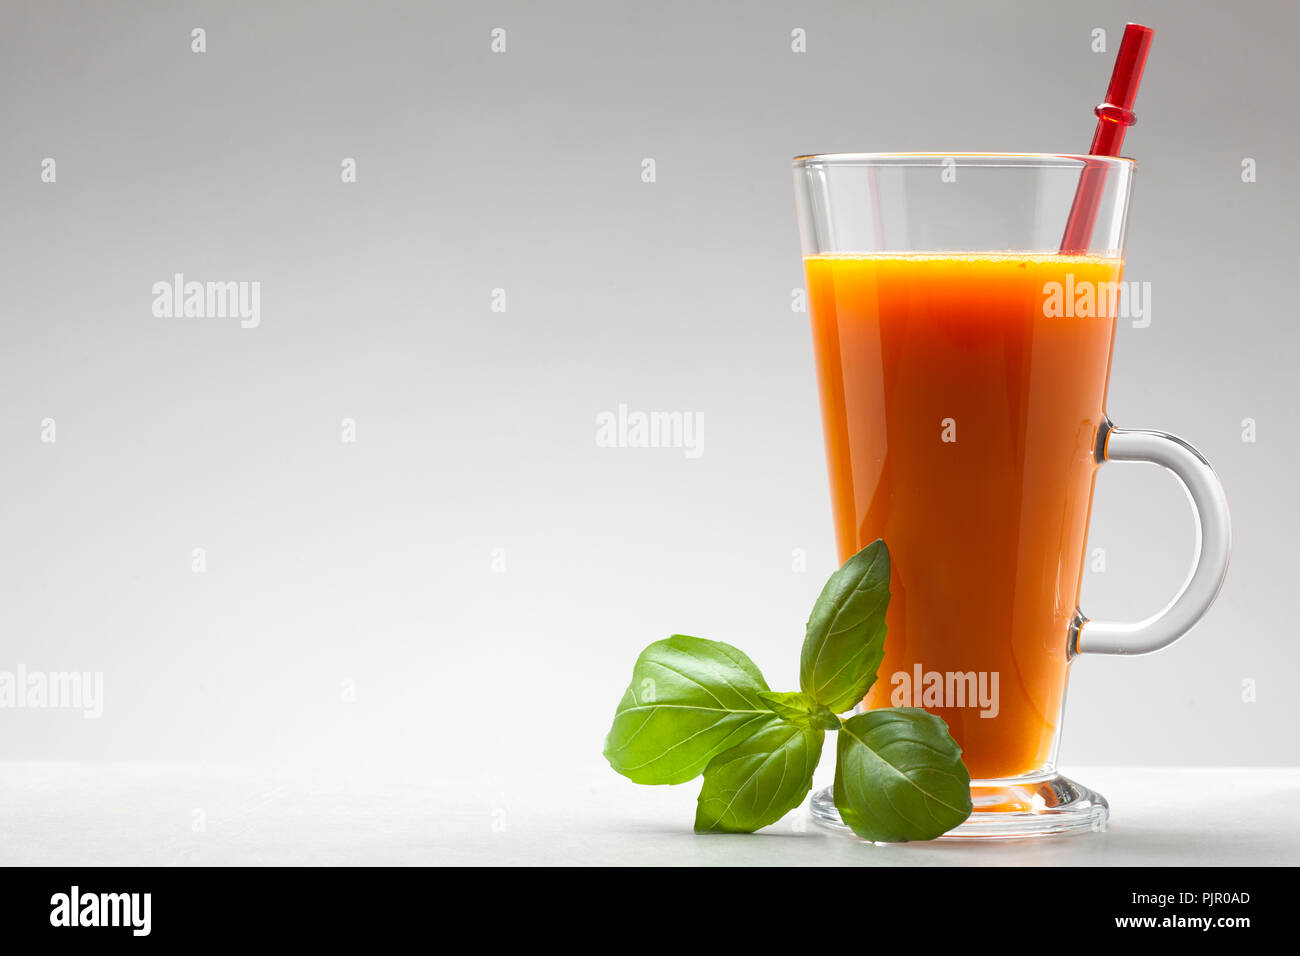 La carotte ou le jus d'orange dans le verre sur fond blanc avec un espace blanc pour le texte Banque D'Images